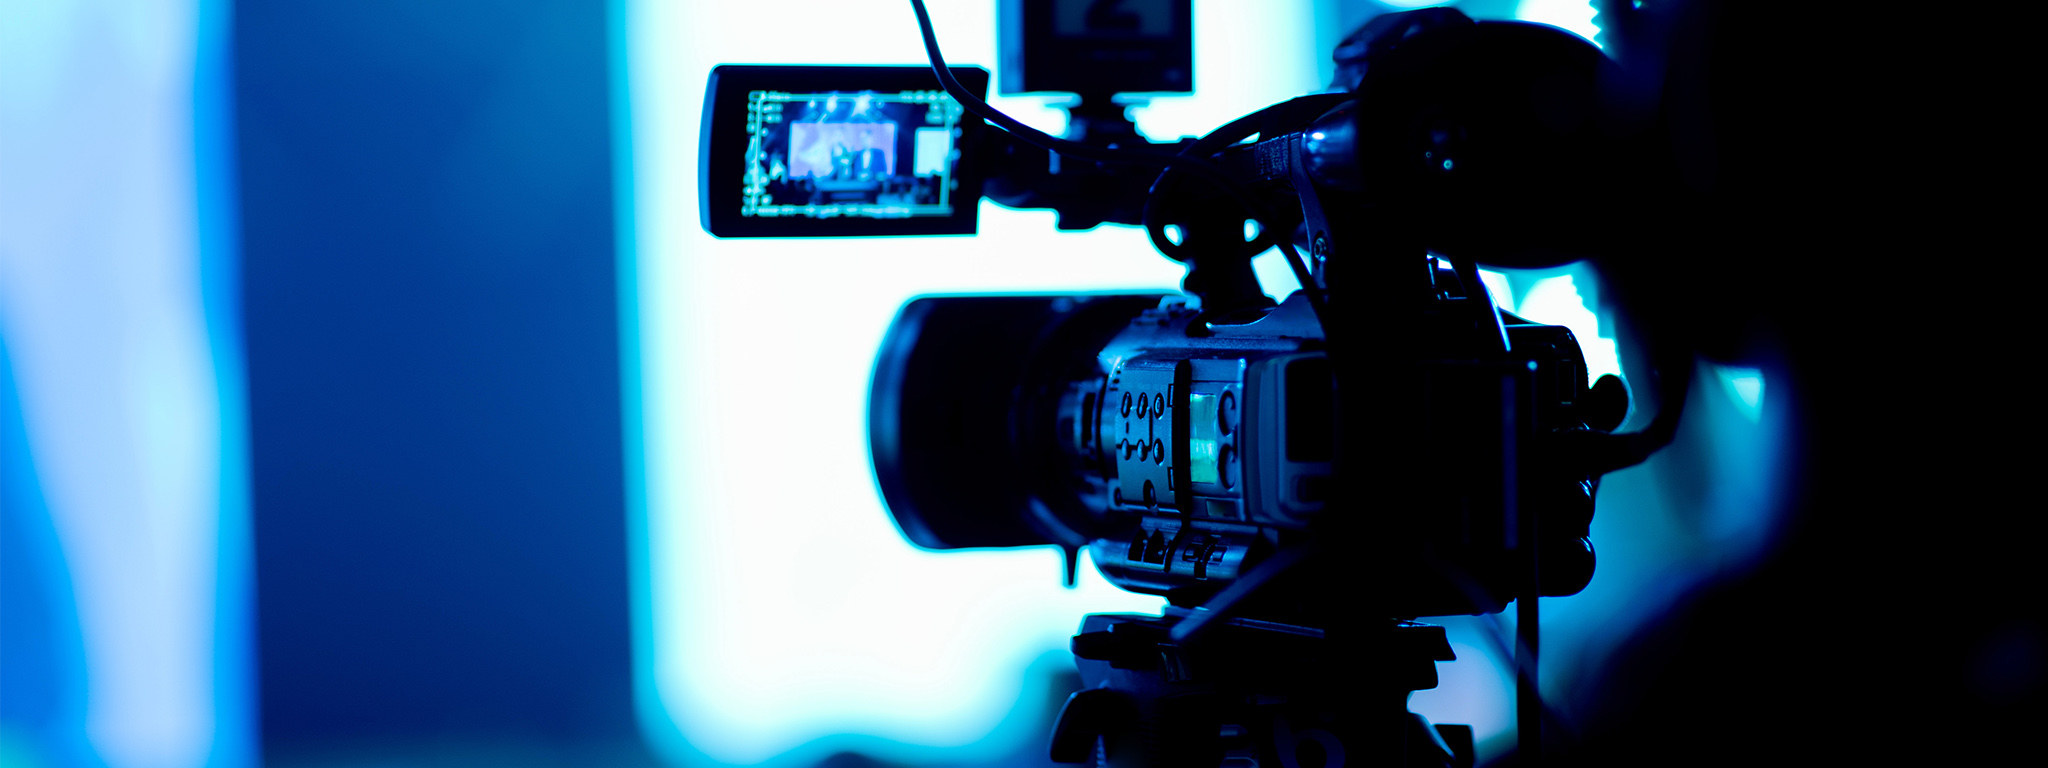 Người quay video đánh giá cảnh quay trên một camera ghi hình với nhiều tệp đính kèm